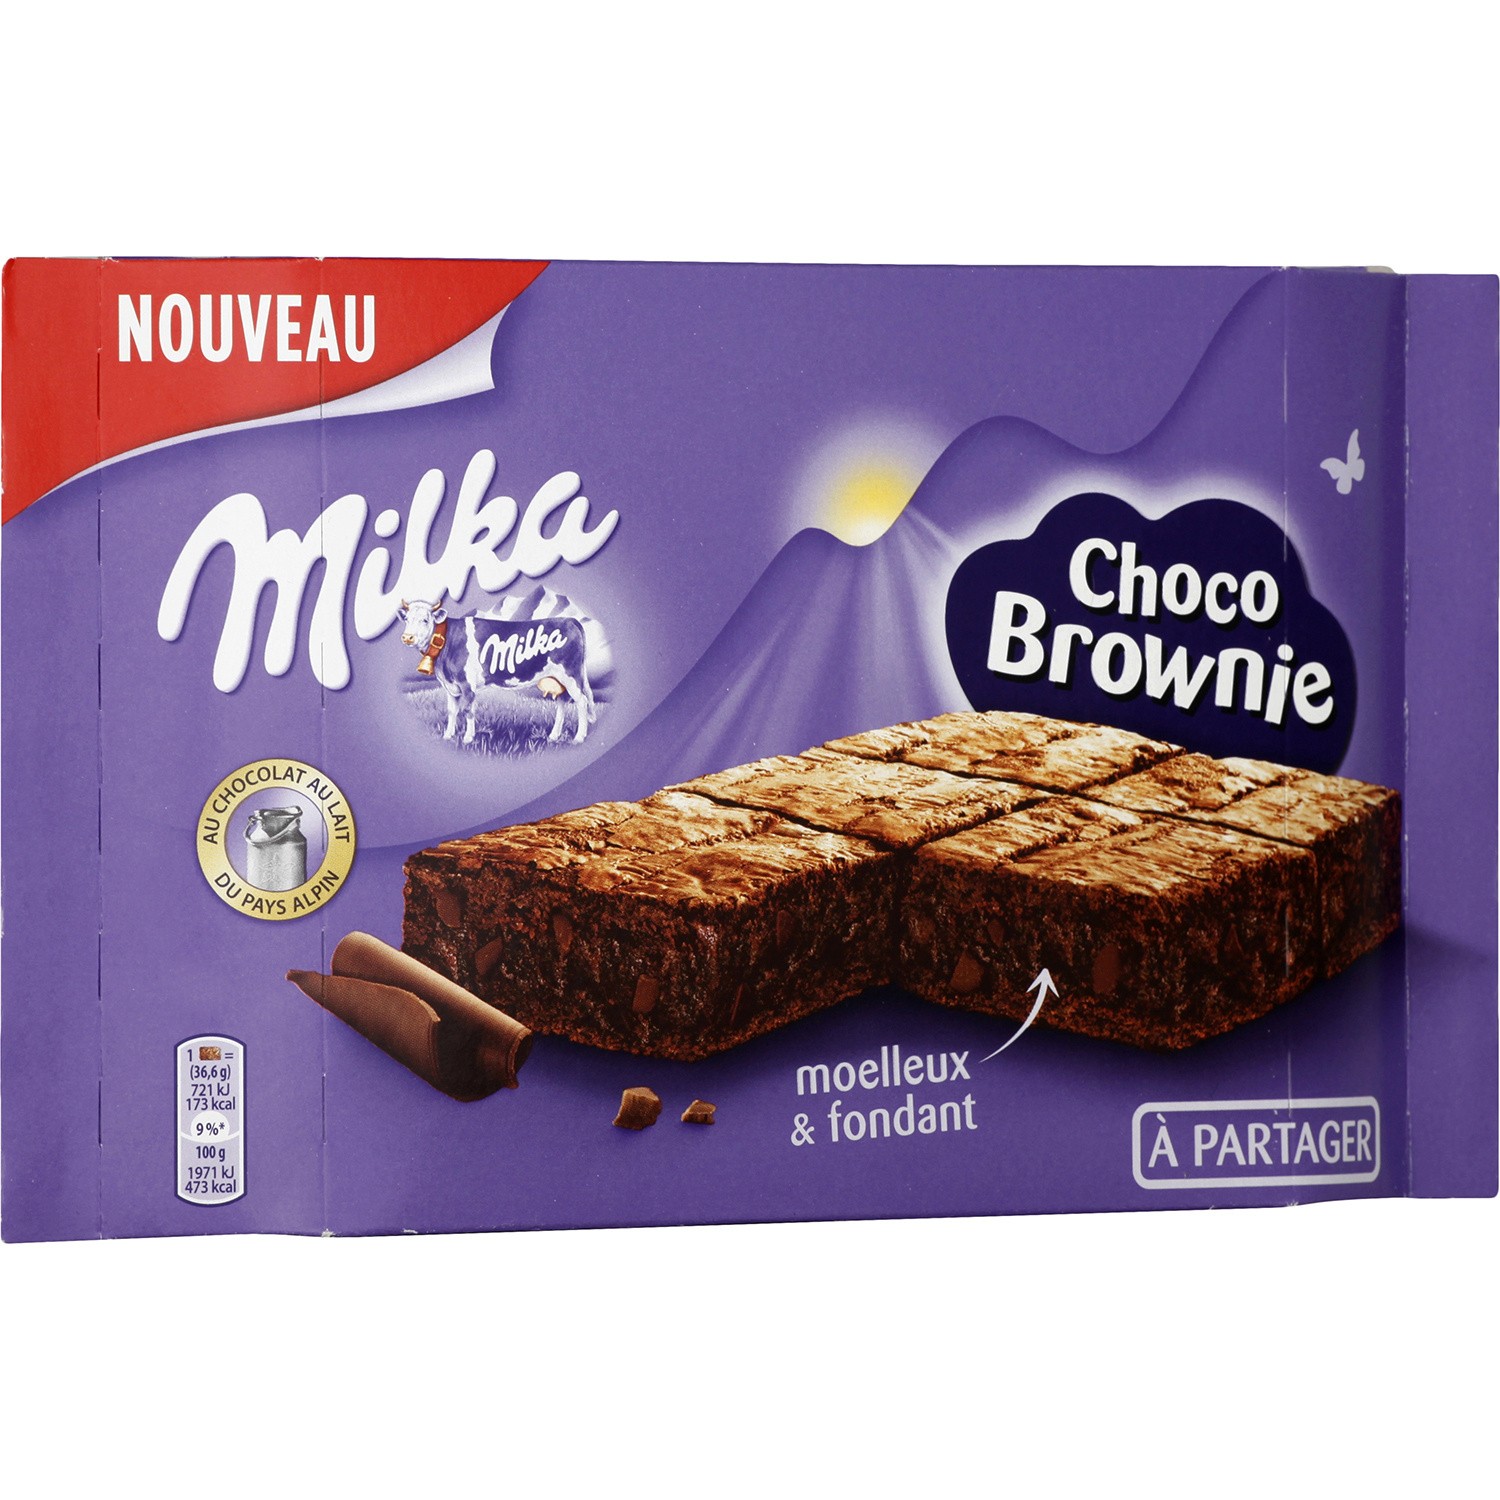 Choco Brownie à partager